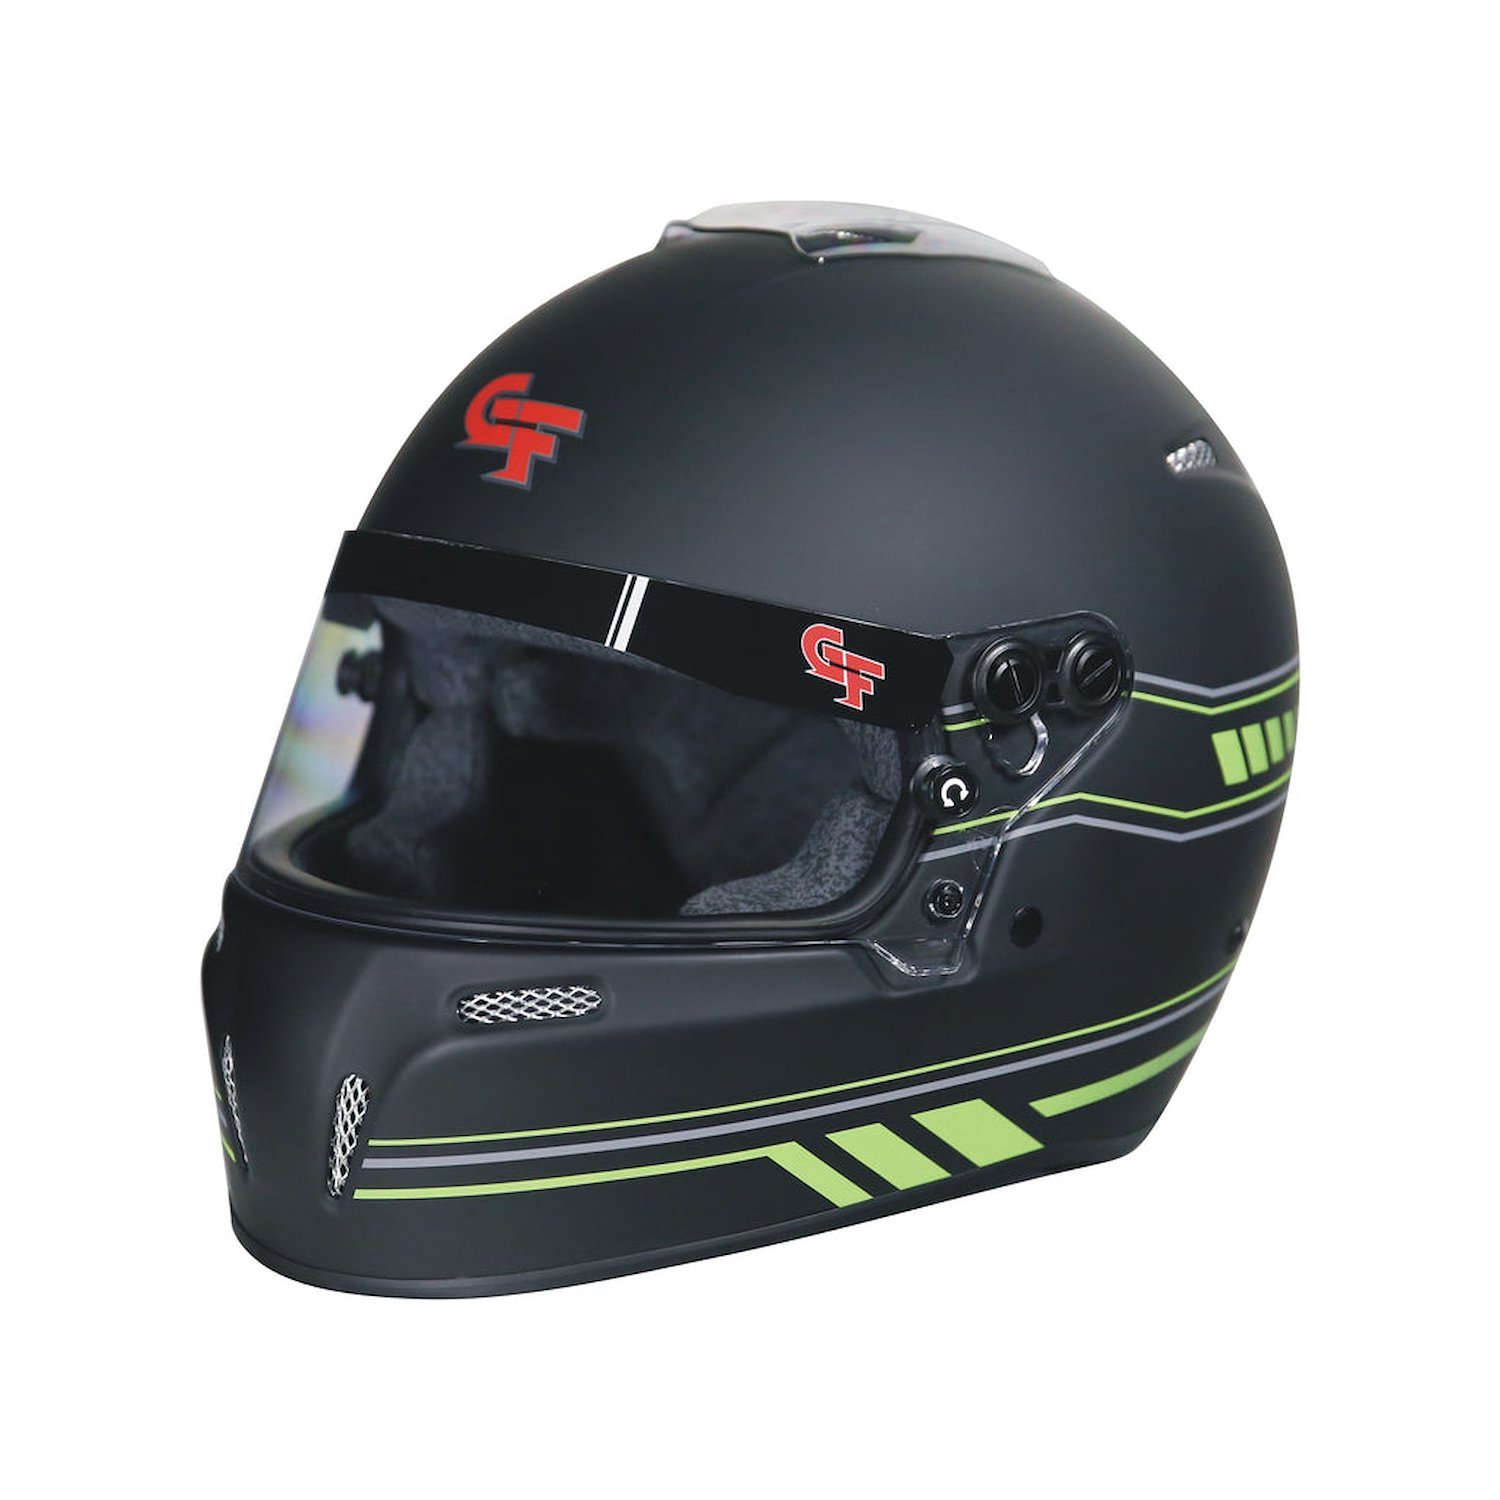 14102MEDM1 Helmet, Nighthawk Graphics SA2020, Medium, Matte Black/Green